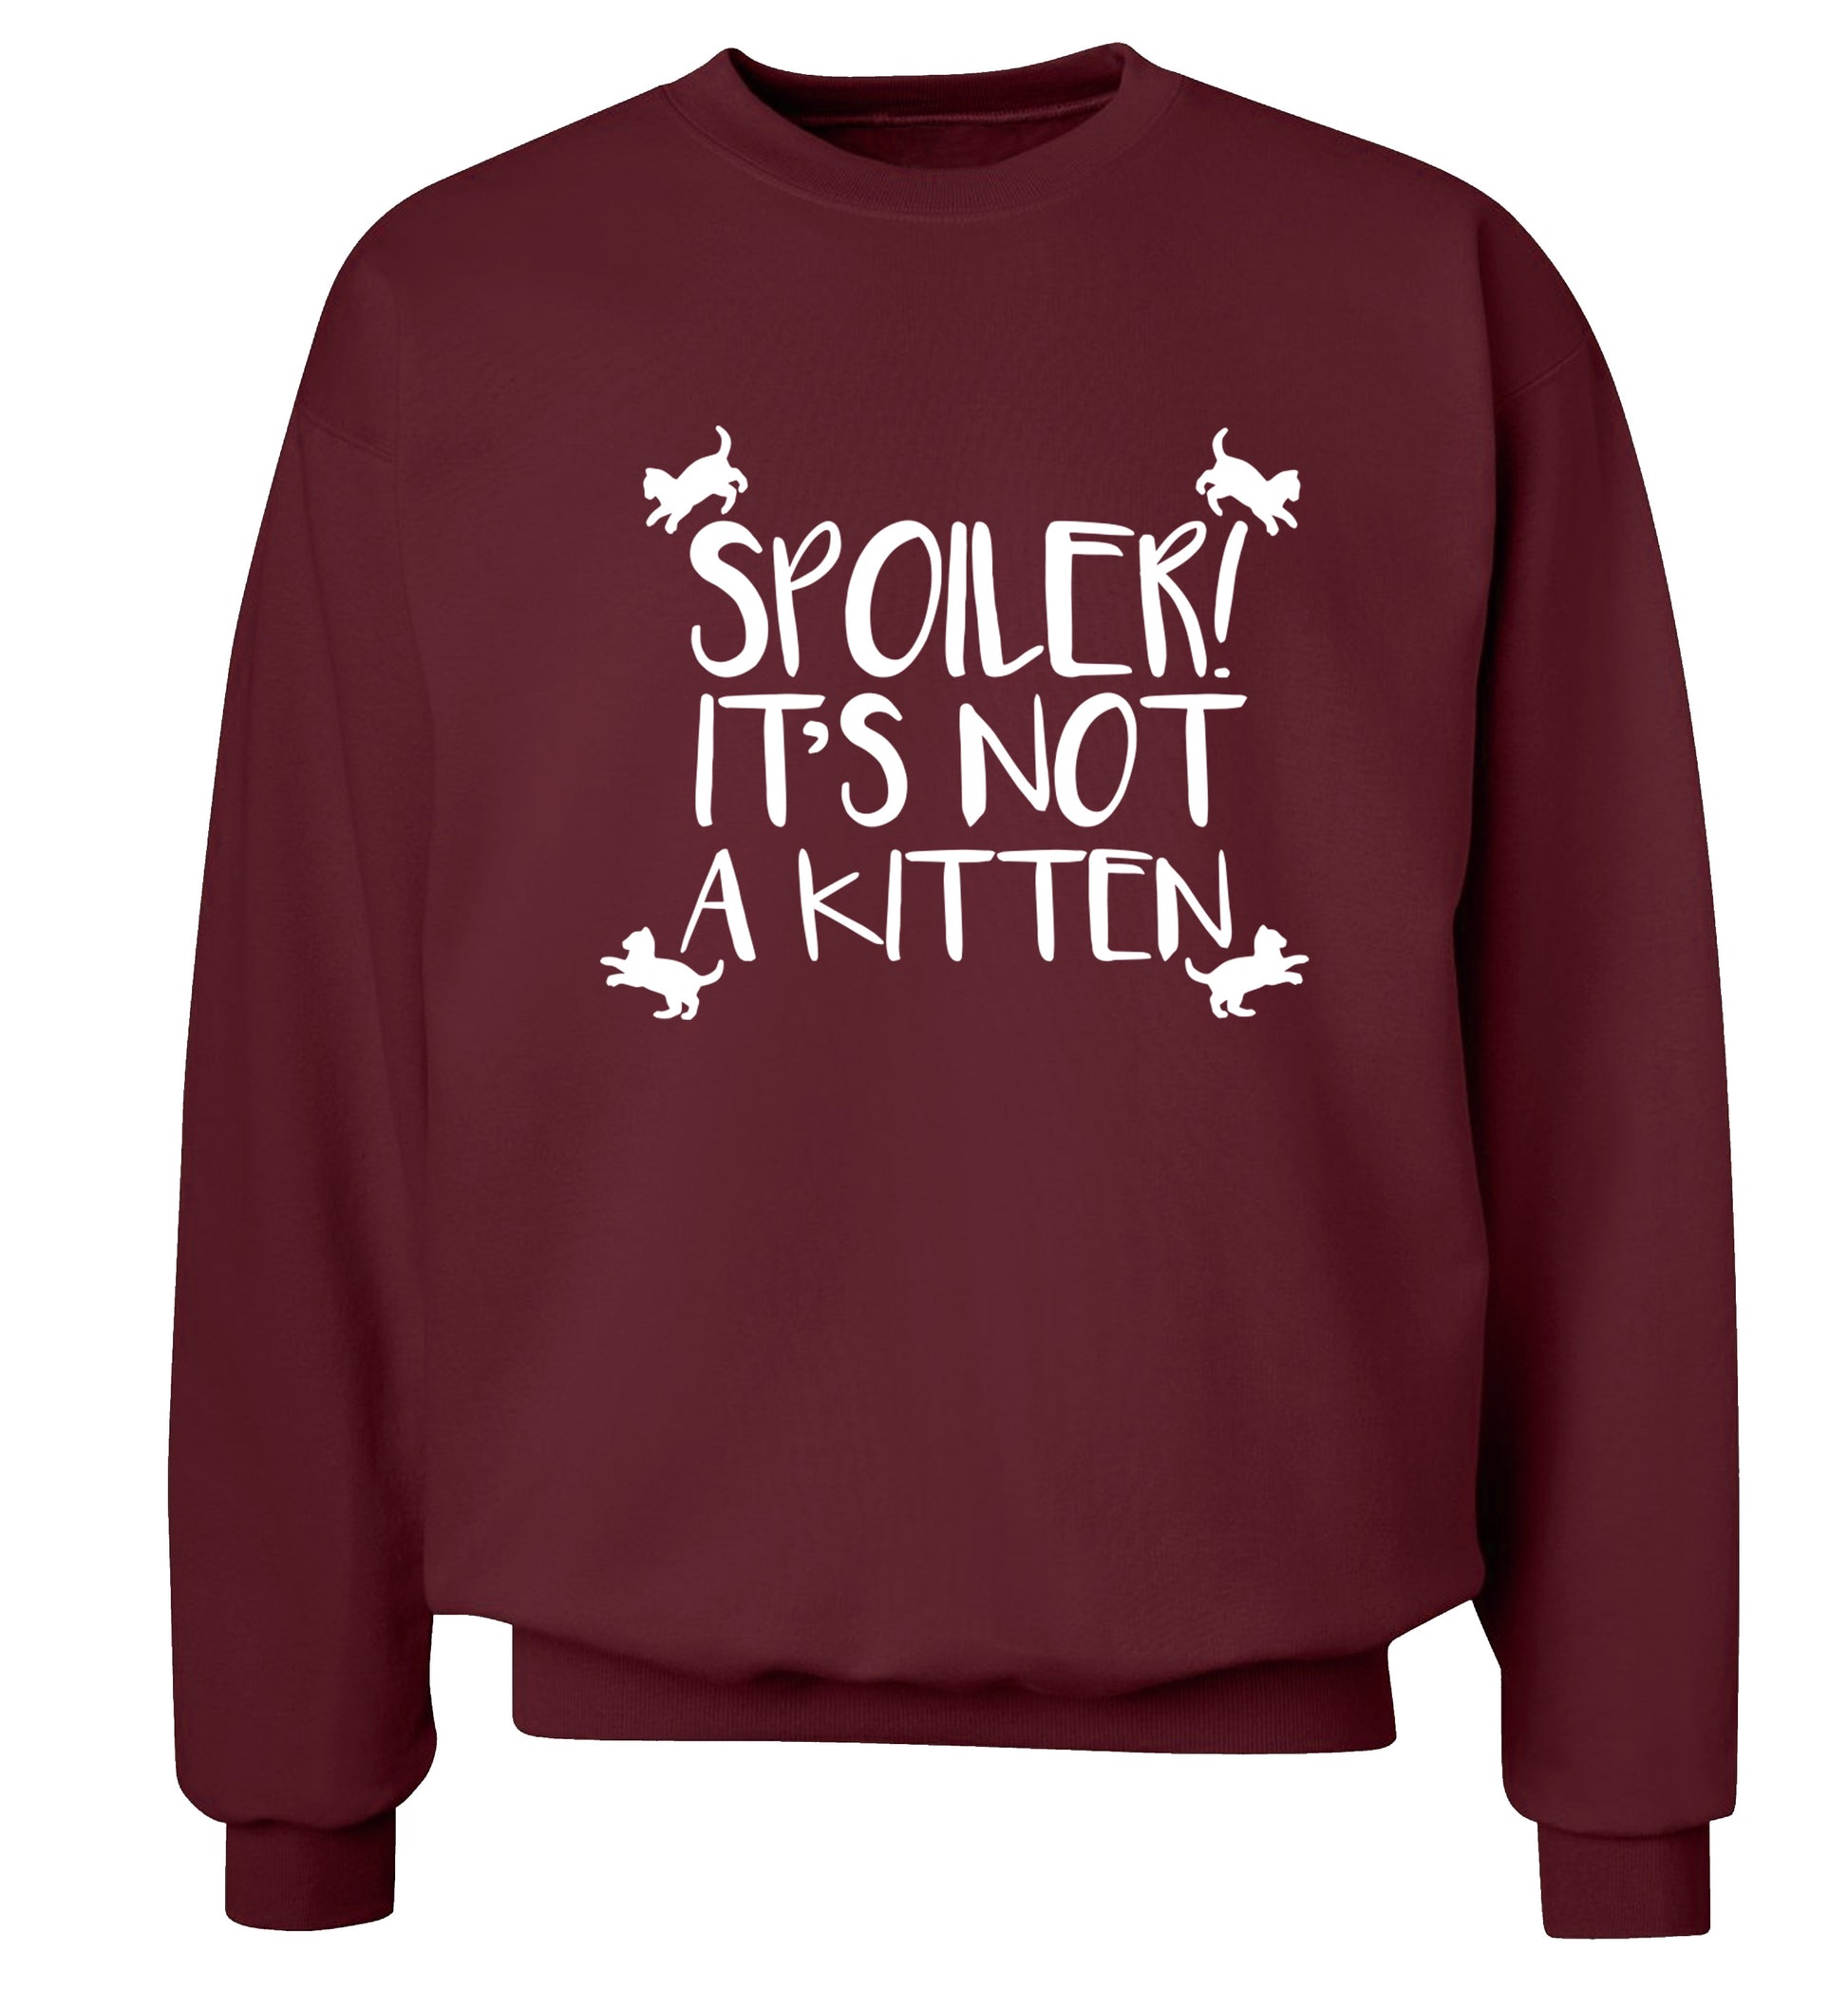 Spoiler it's not a kitten Adult's unisex maroon Sweater 2XL